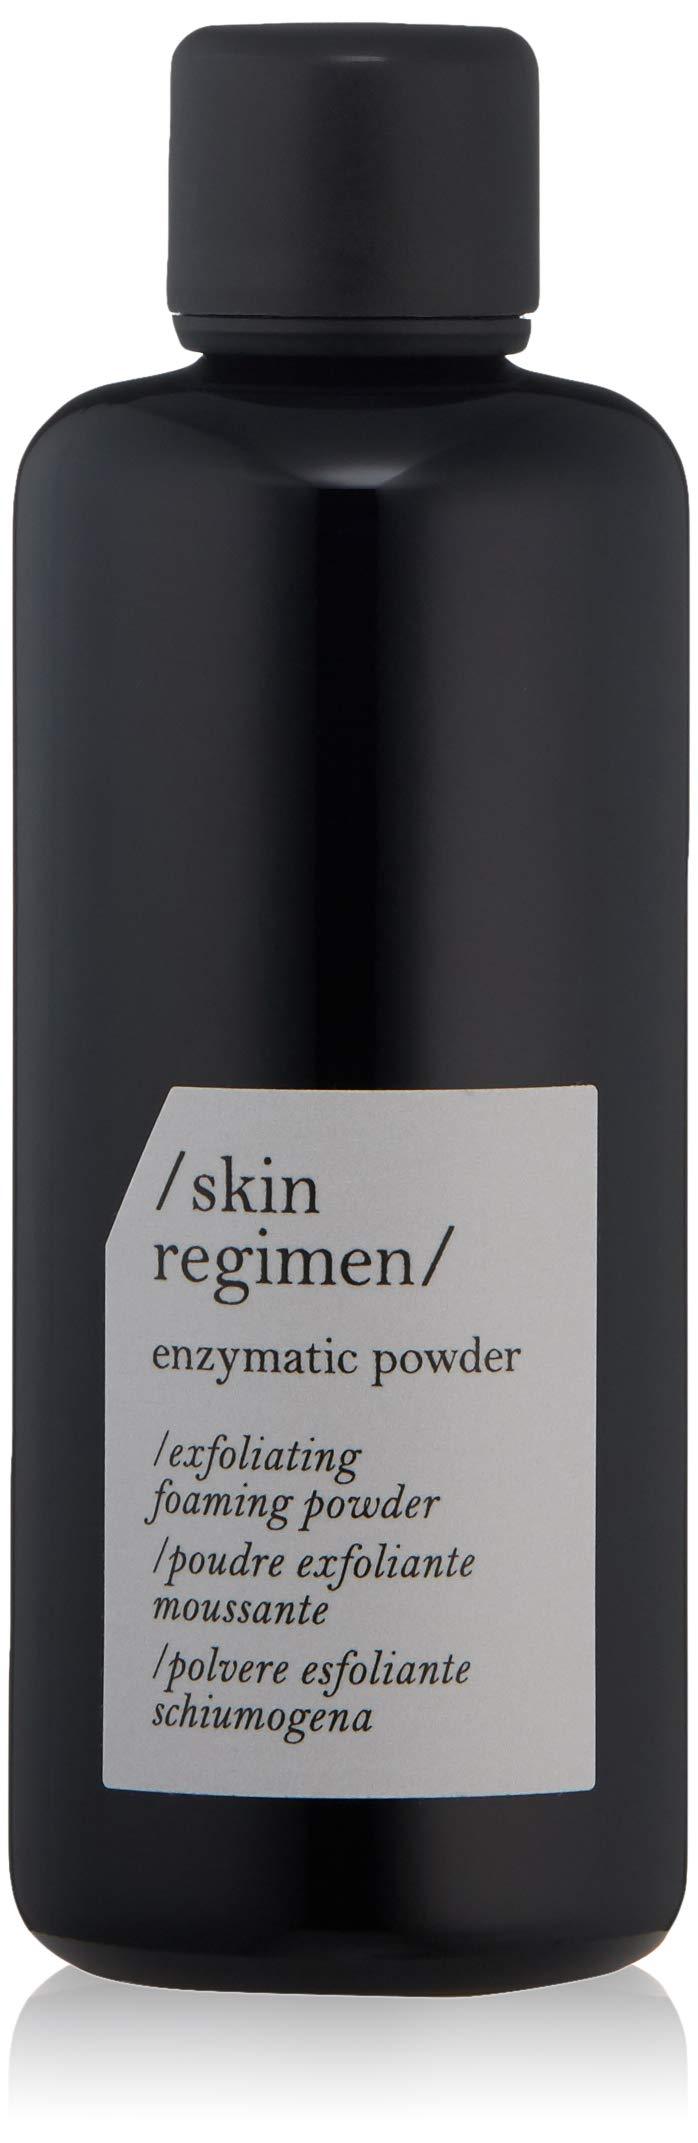 /skin regimen/ Exfoliating Foaming Enzymatic Powder - BeesActive Australia